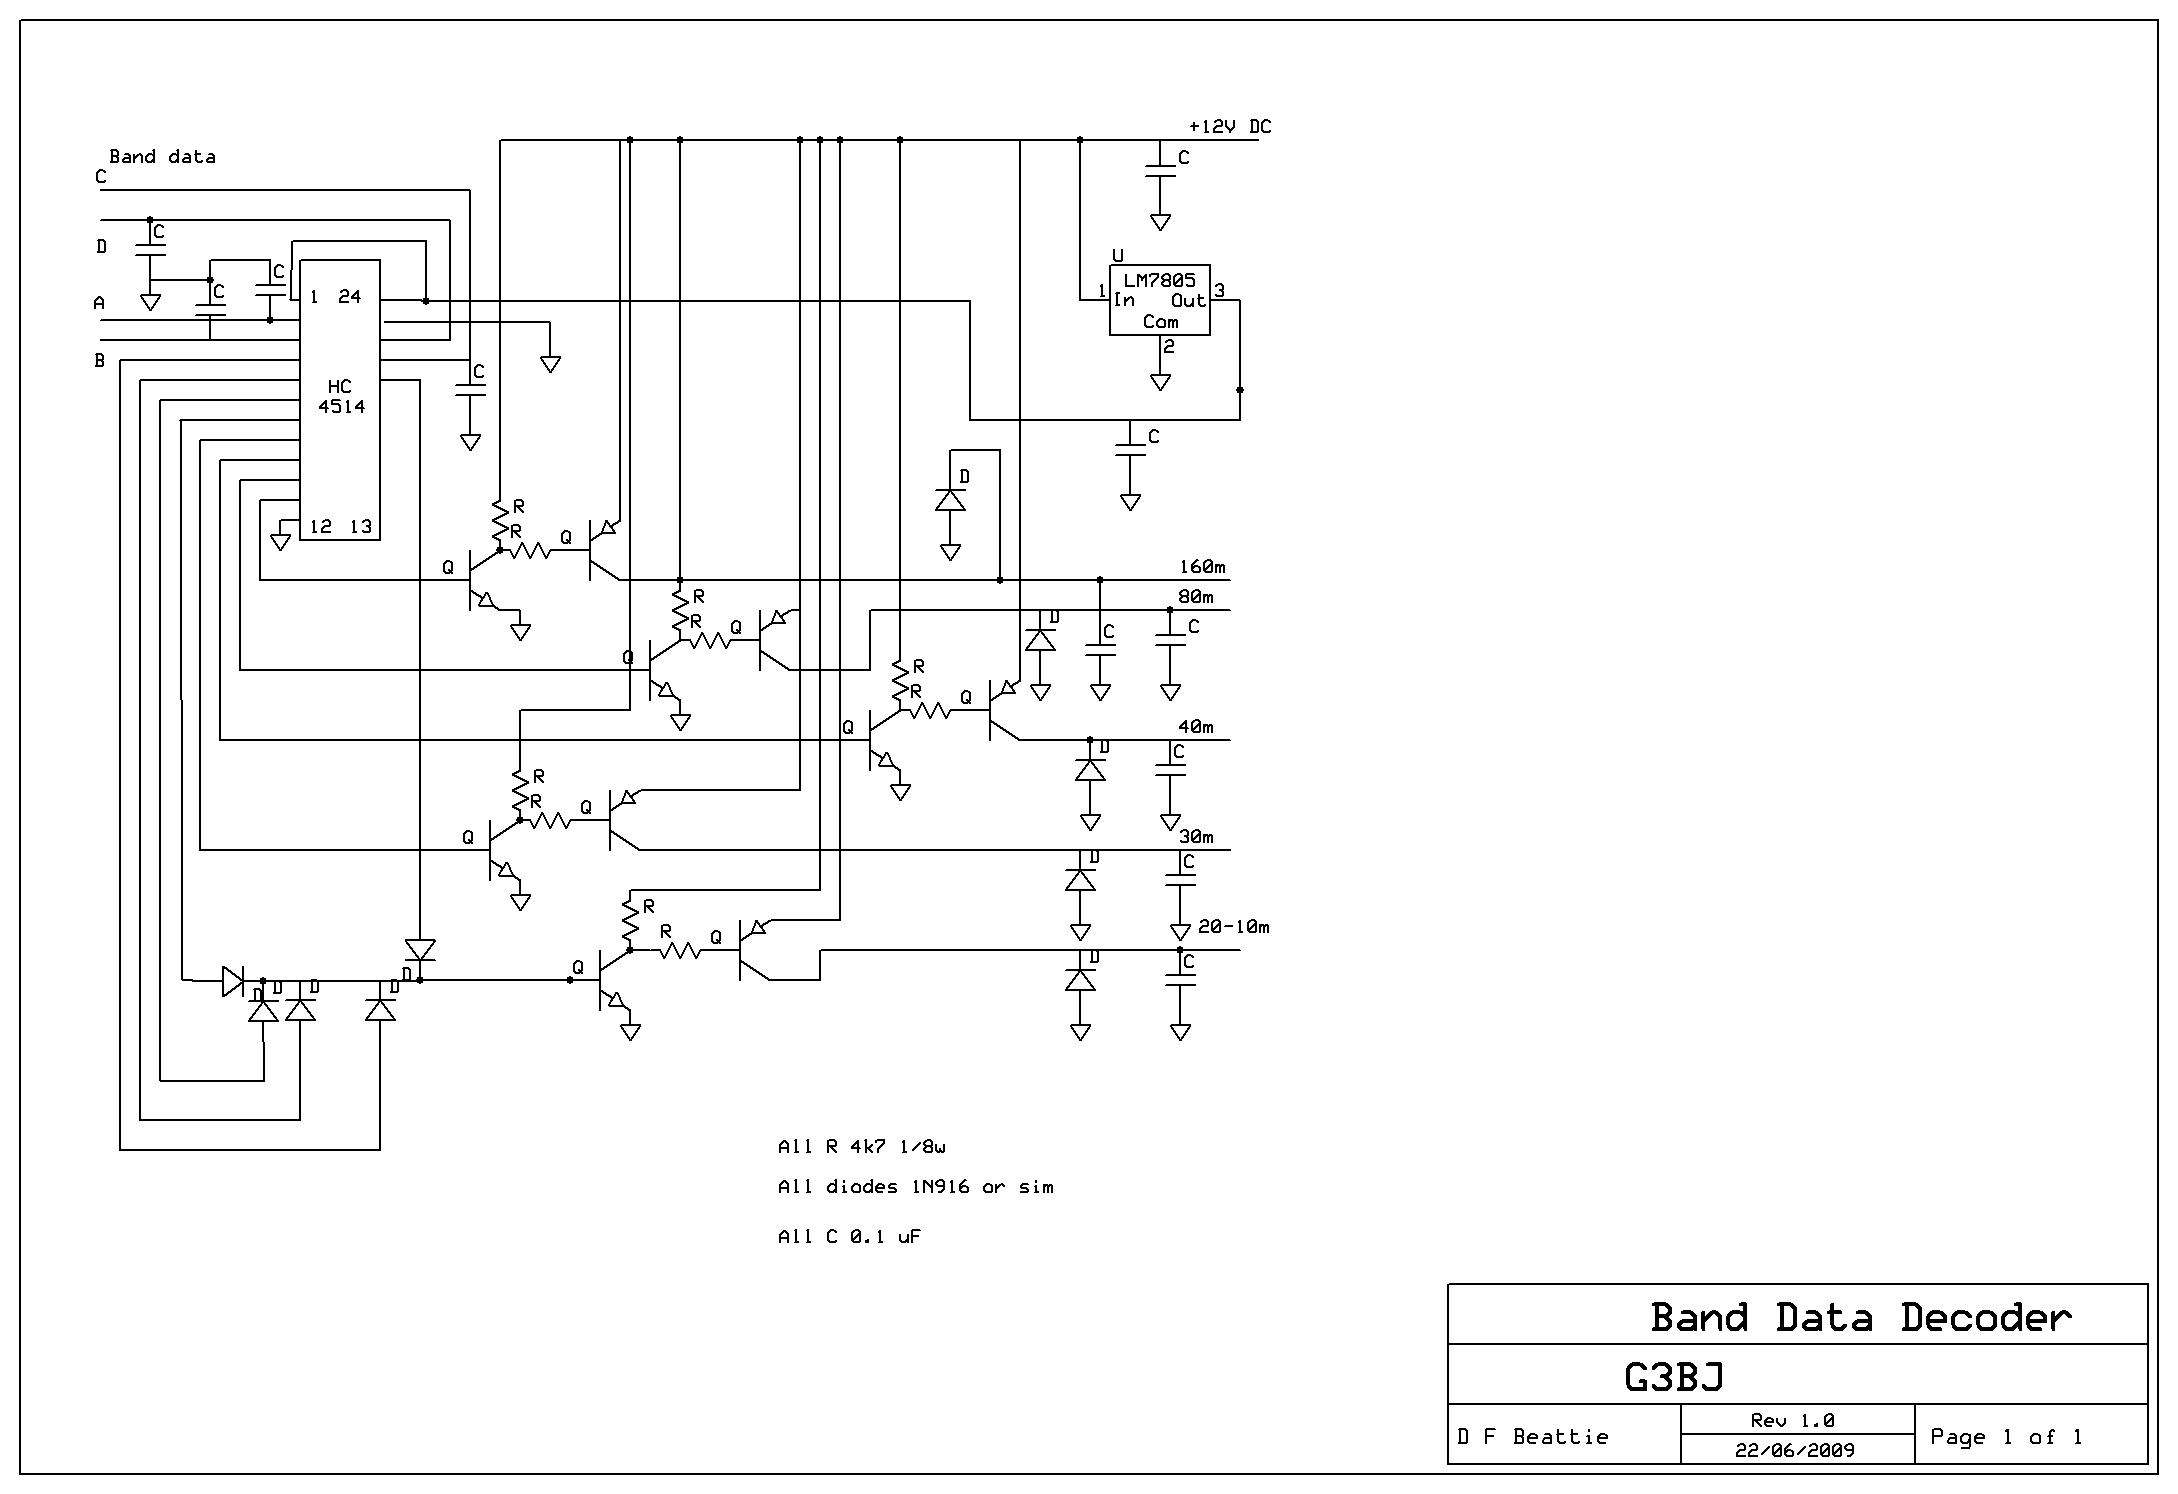 Band data decoder schematic